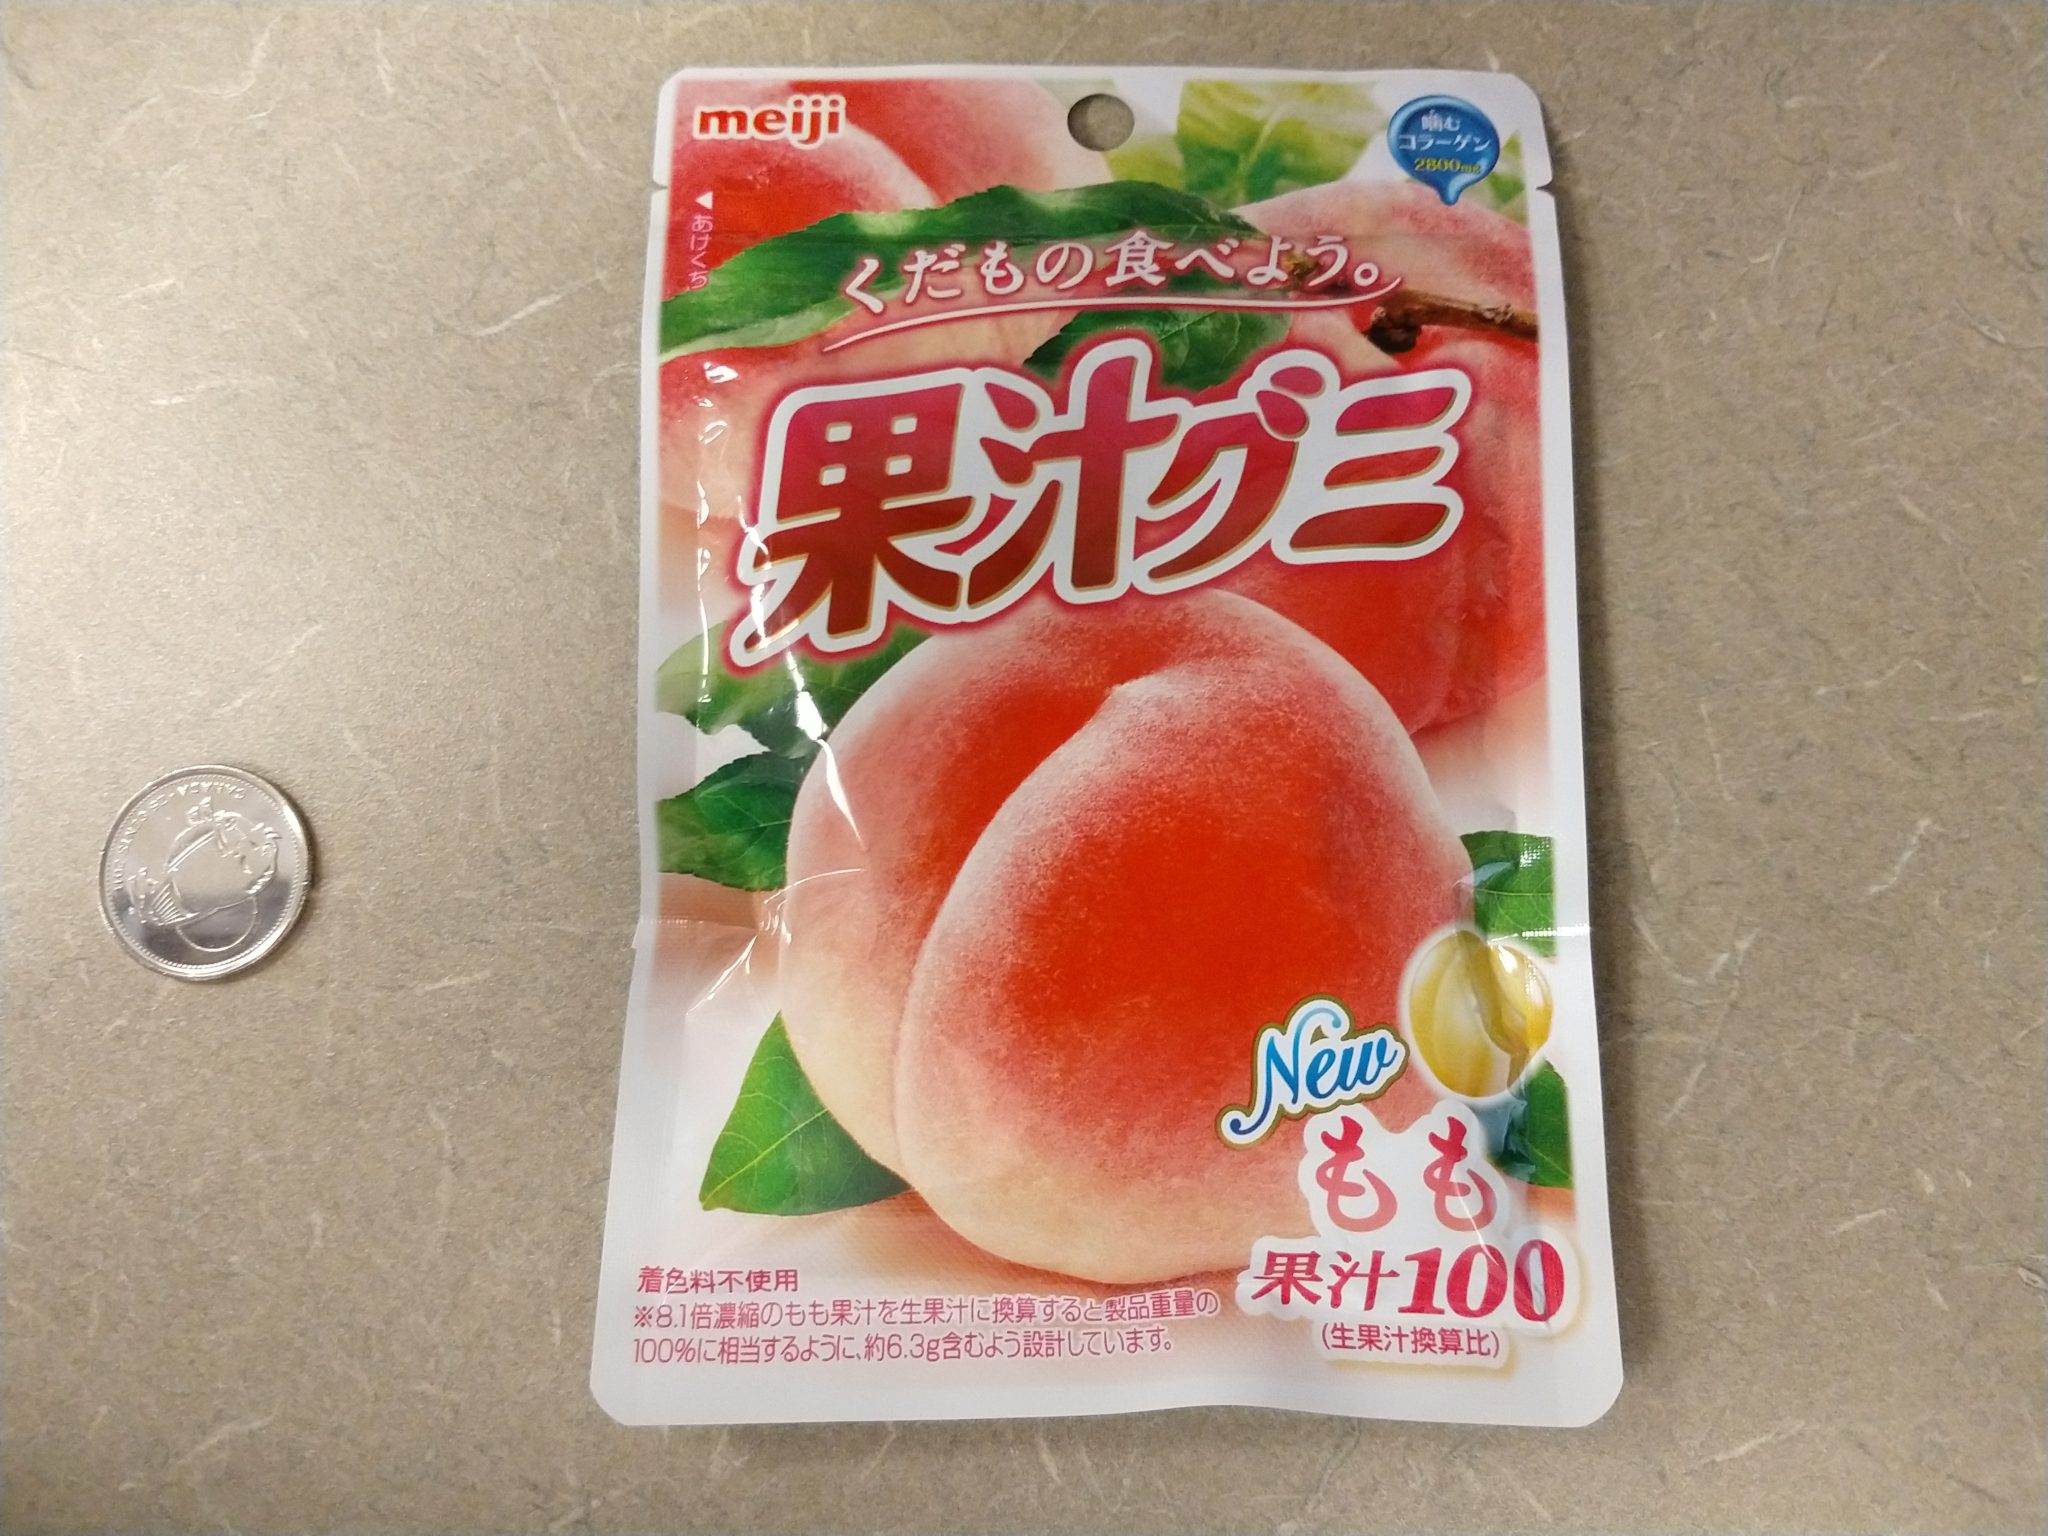 Kaju Juicy Gummy Candy – Peach